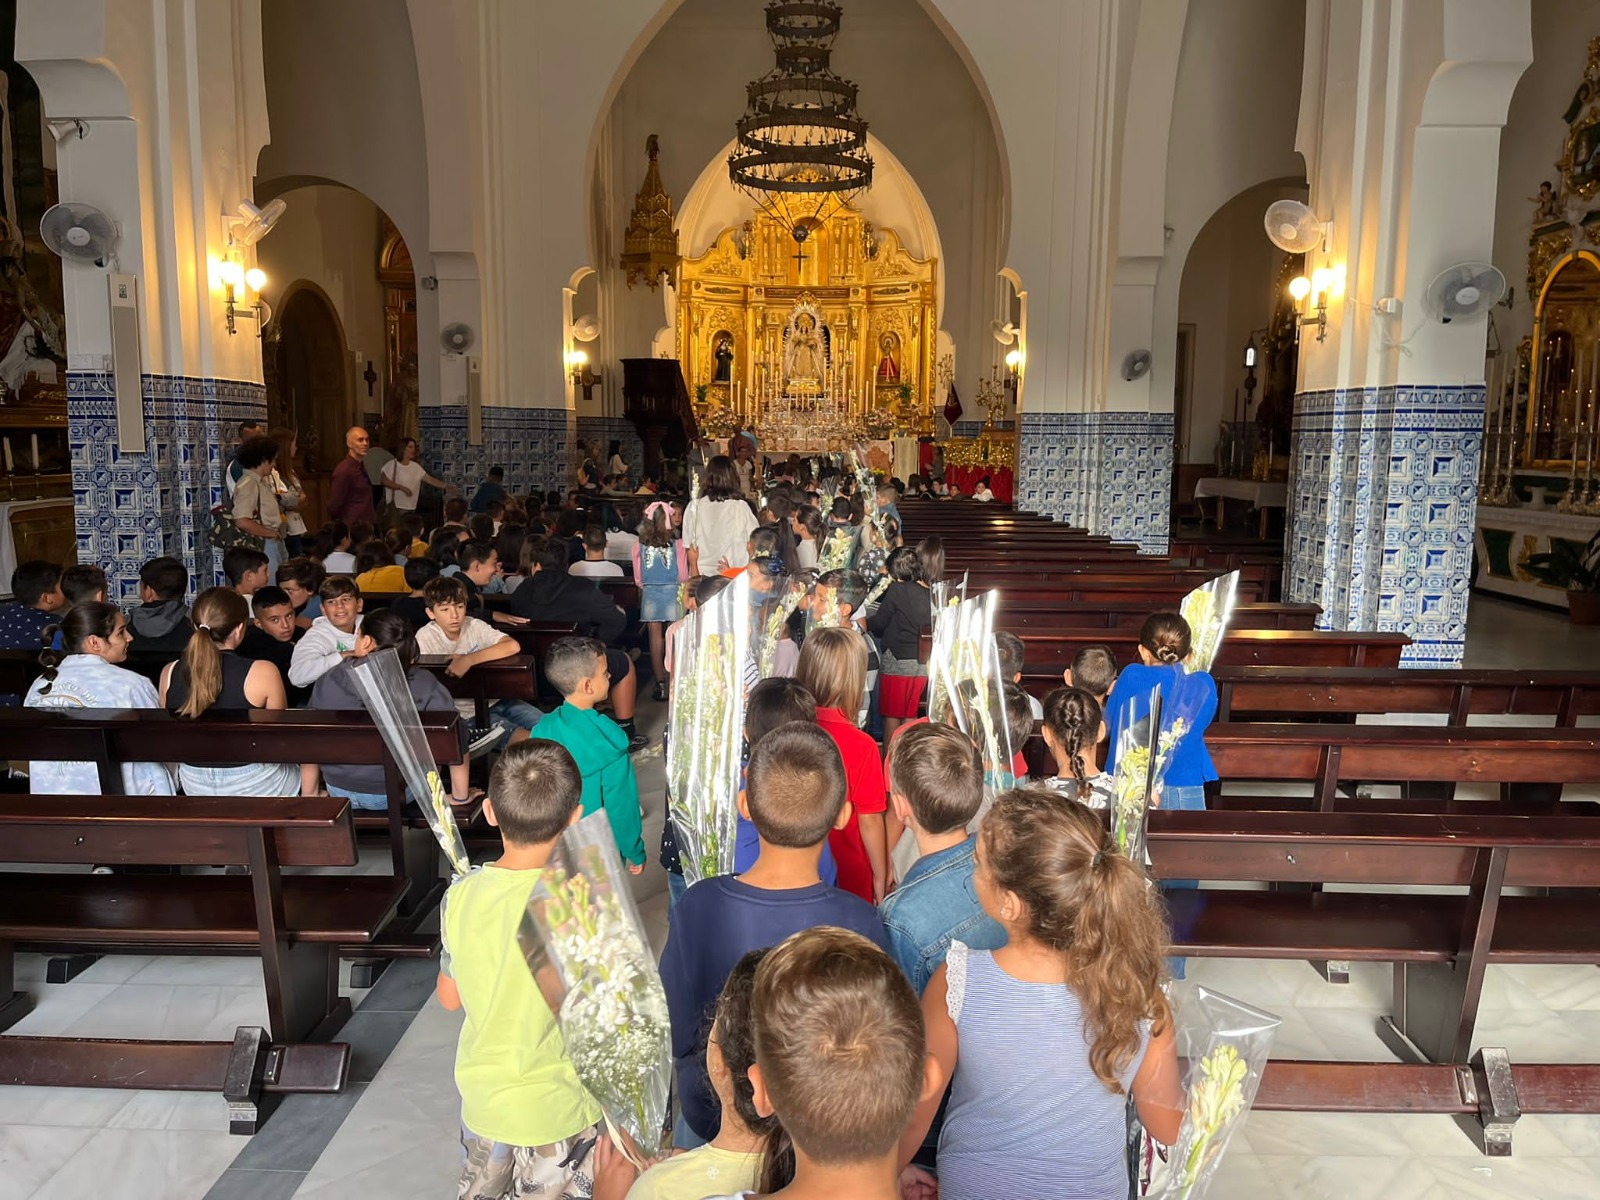 Los pequeños isleños ofrendan nardos a la Patrona de Isla Cristina, la Virgen del Rosario